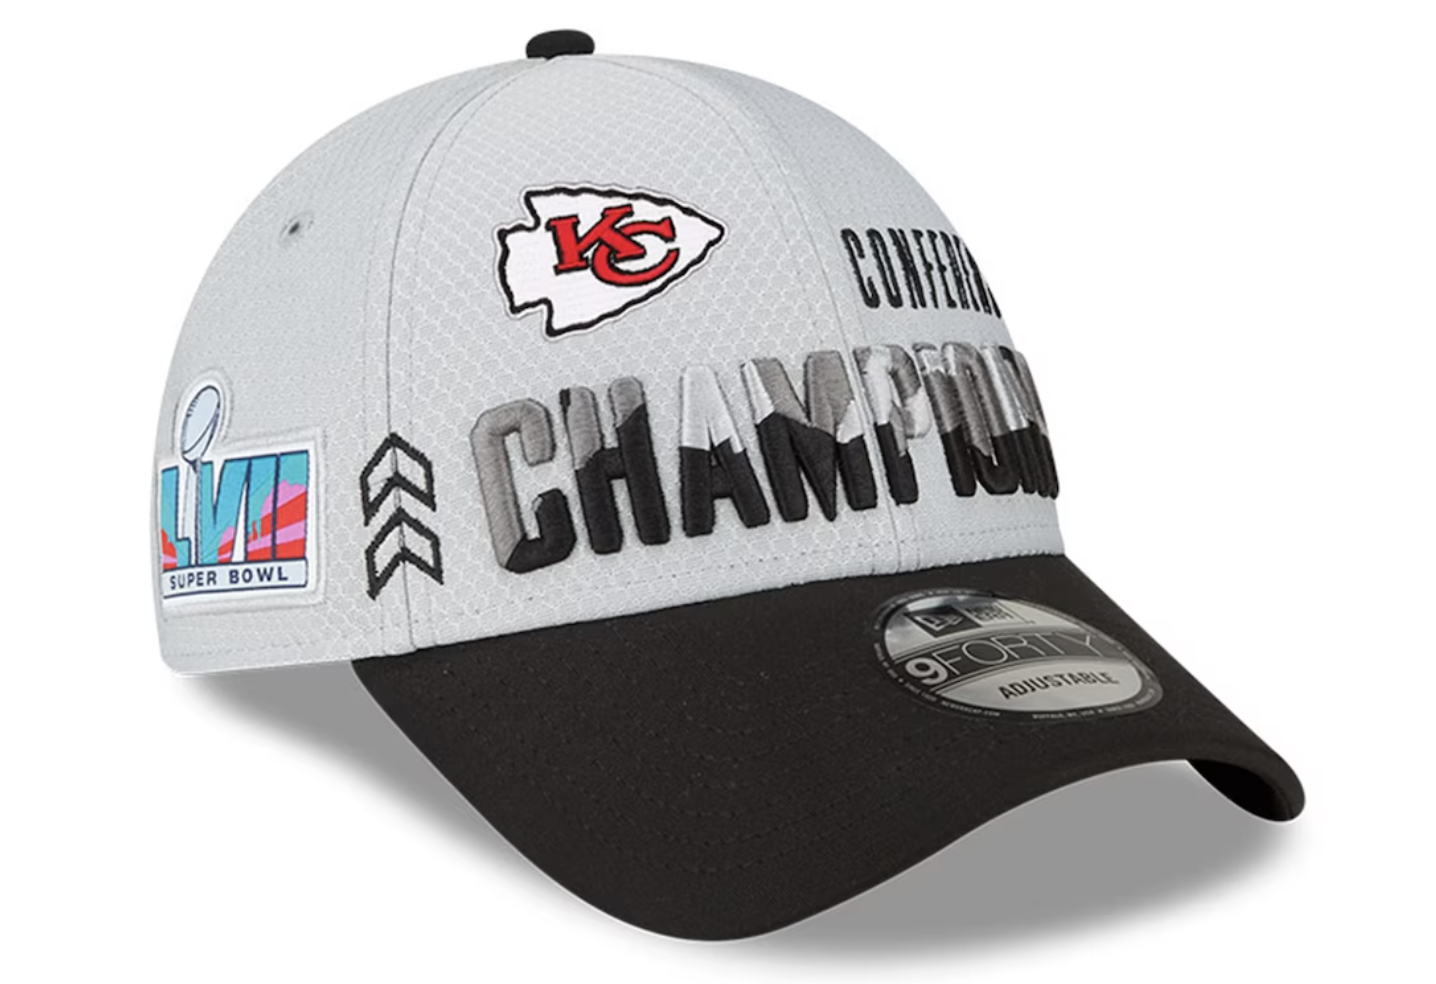 Super Bowl LVII hats : r/hats